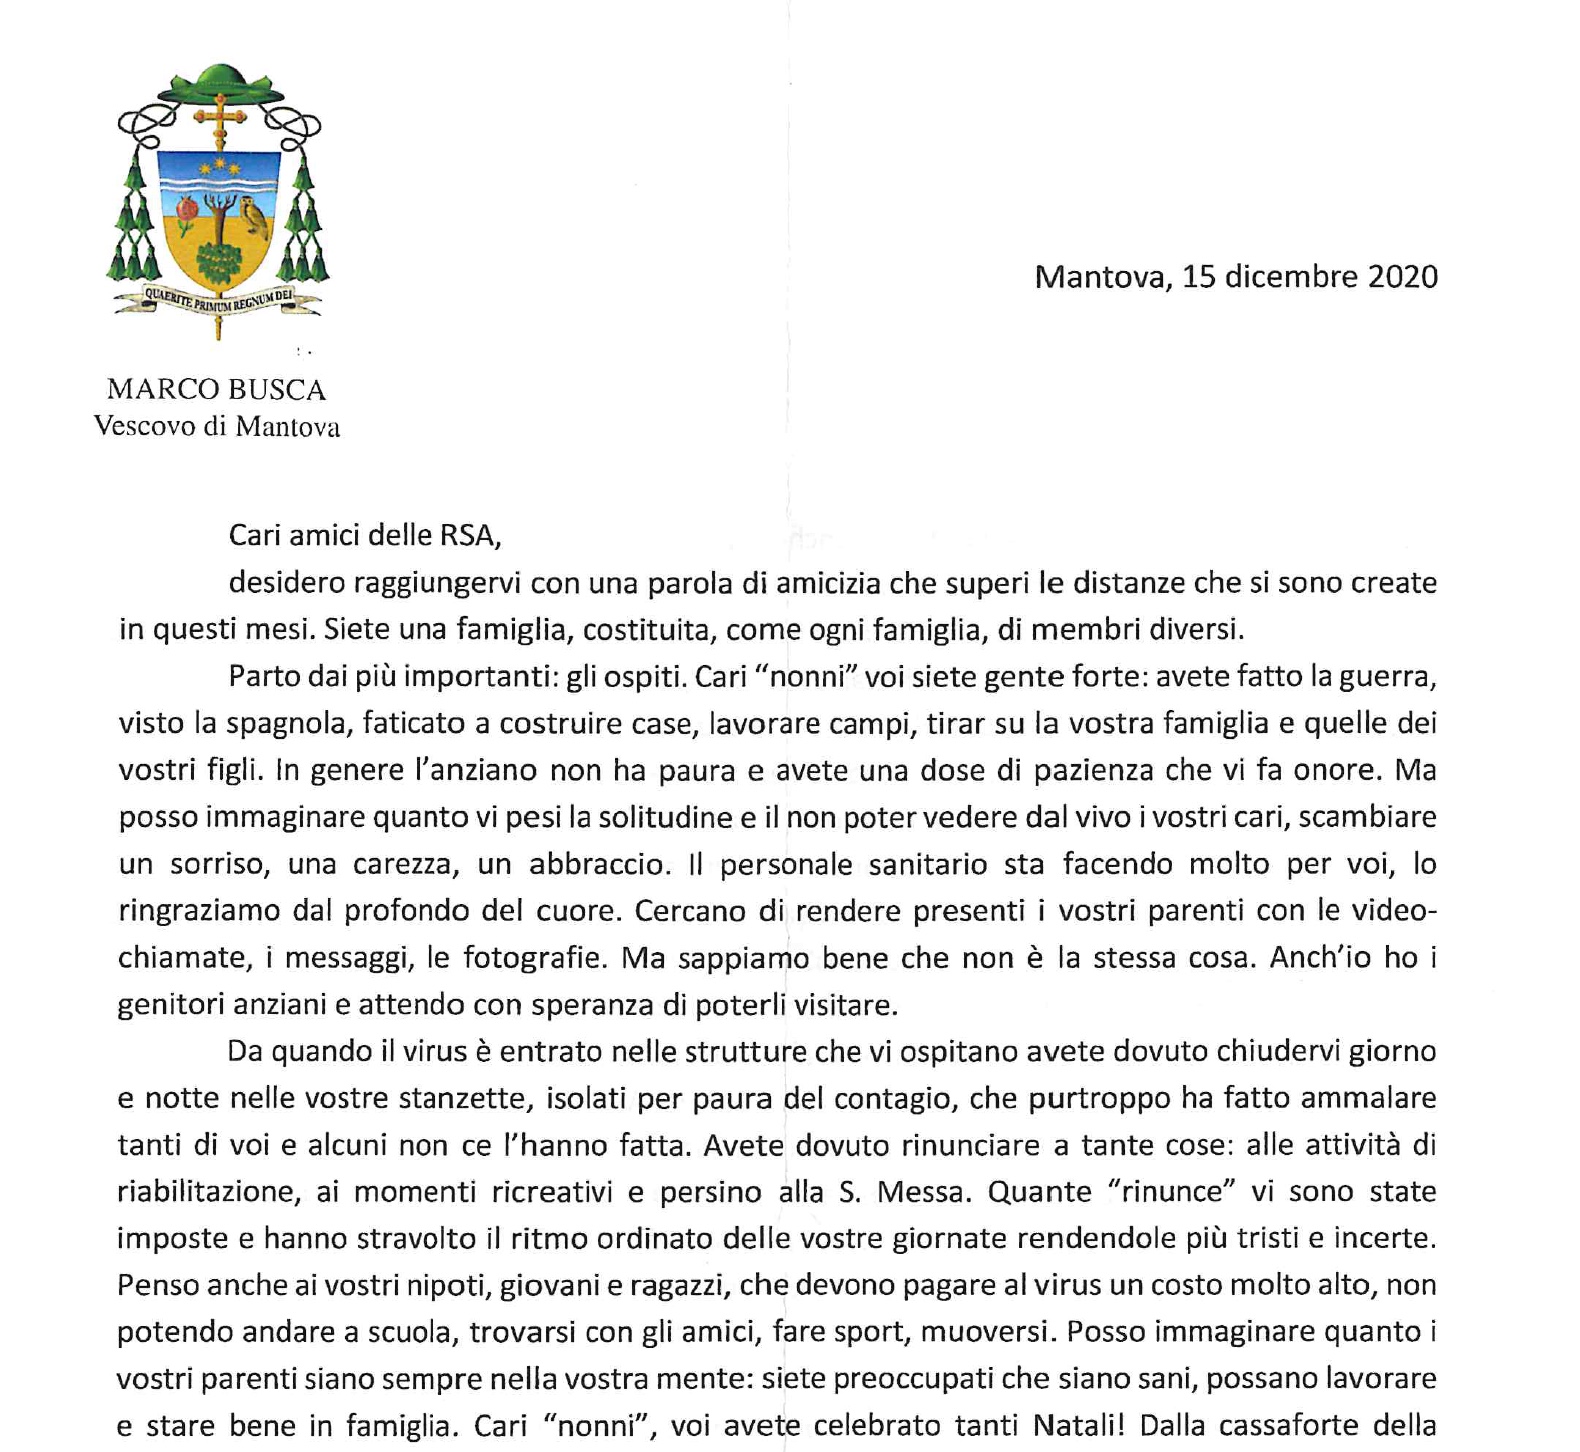 La lettera di vicinanza ad Ospiti ed Operatori delle RSA mantovane da parte di S.E. Marco Busca Vescovo di Mantova